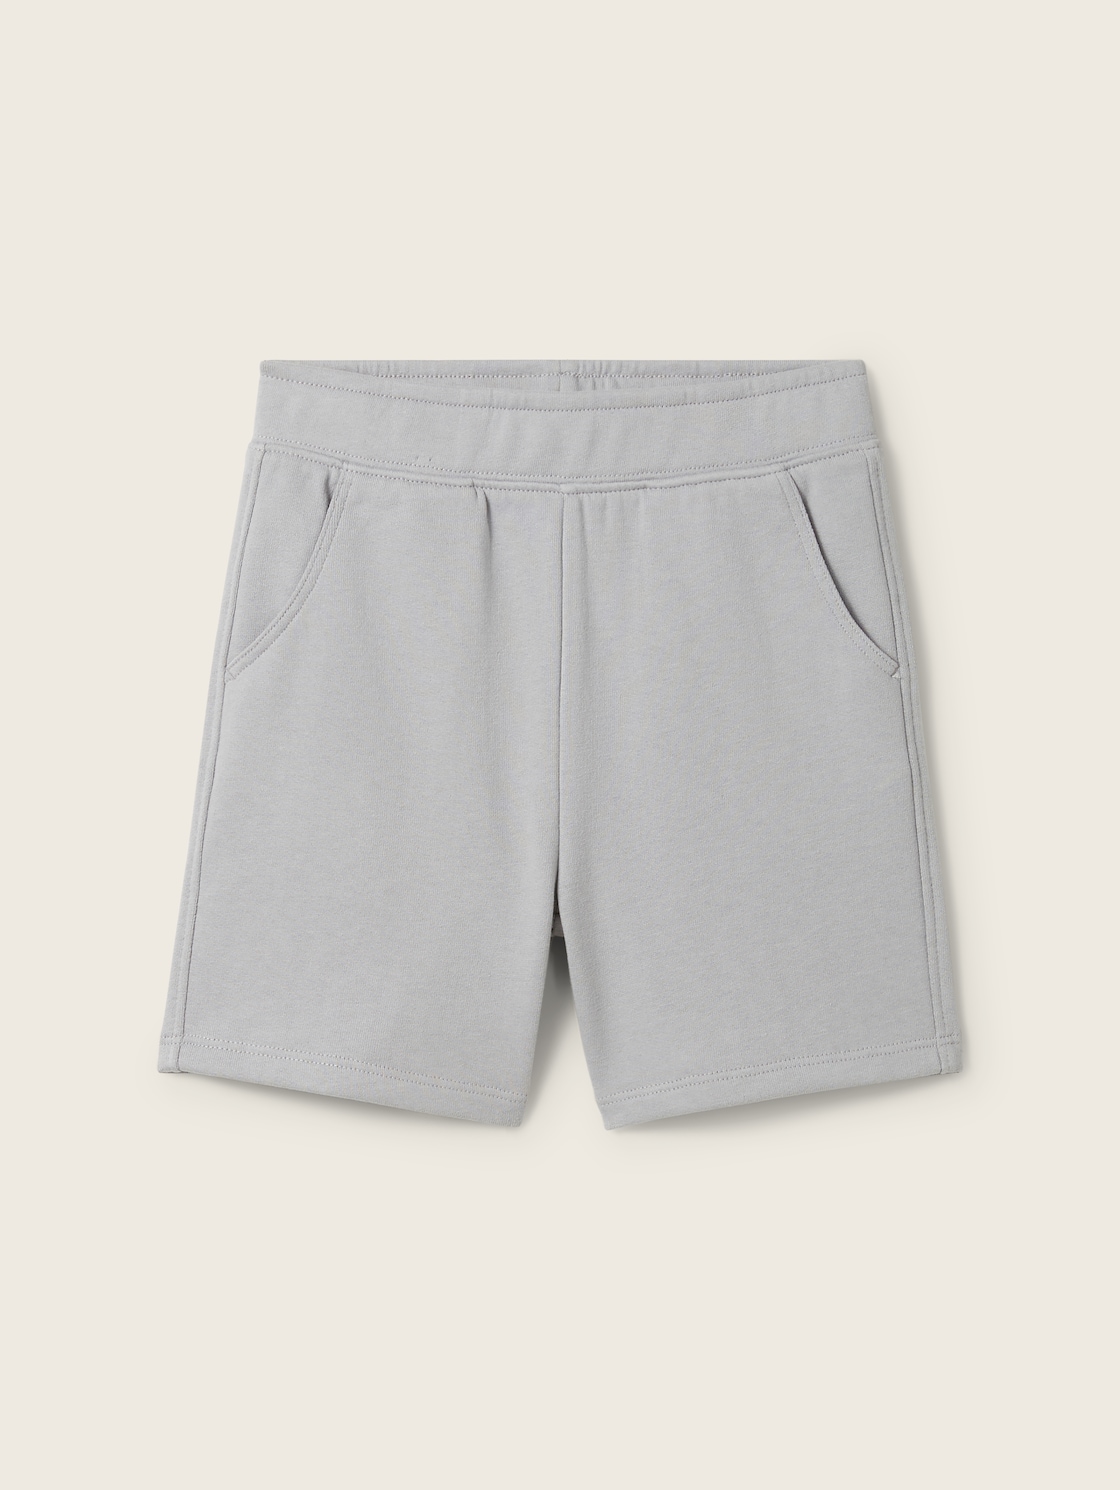 TOM TAILOR Jungen Basic Sweat Shorts, grau, Uni, Gr. 104/110 von Tom Tailor